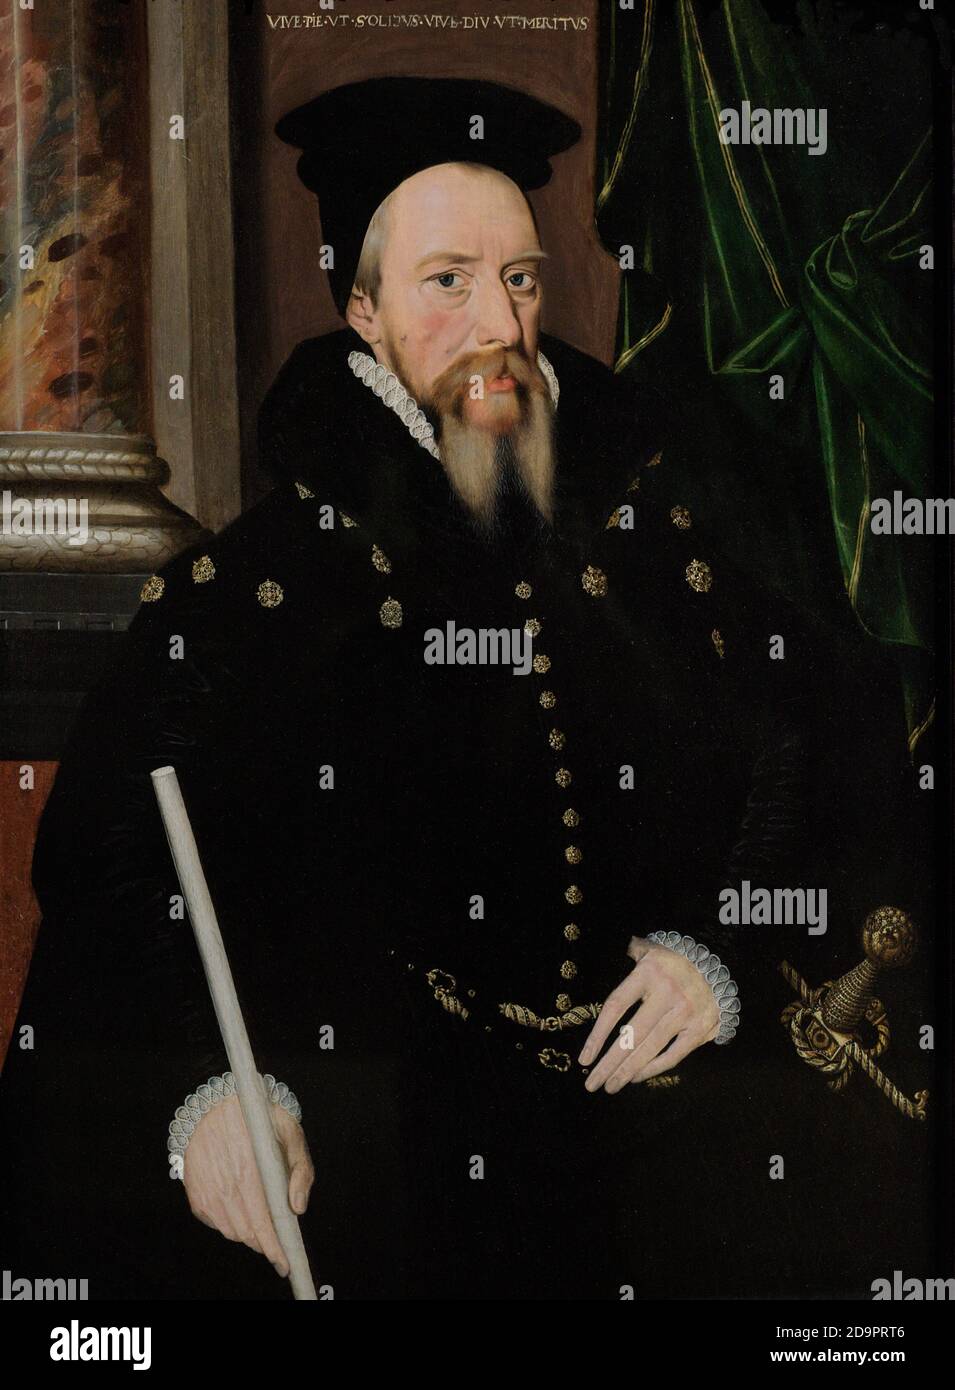 William Cecil, 1. Baron Burghley (1520/1-1598). Hauptberater von Englands Königin Elizabeth I. Porträt eines unbekannten anglo-niederländischen Künstlers. Öl auf Platte, 1560s. National Portrait Gallery. London, England, Vereinigtes Königreich. Stockfoto